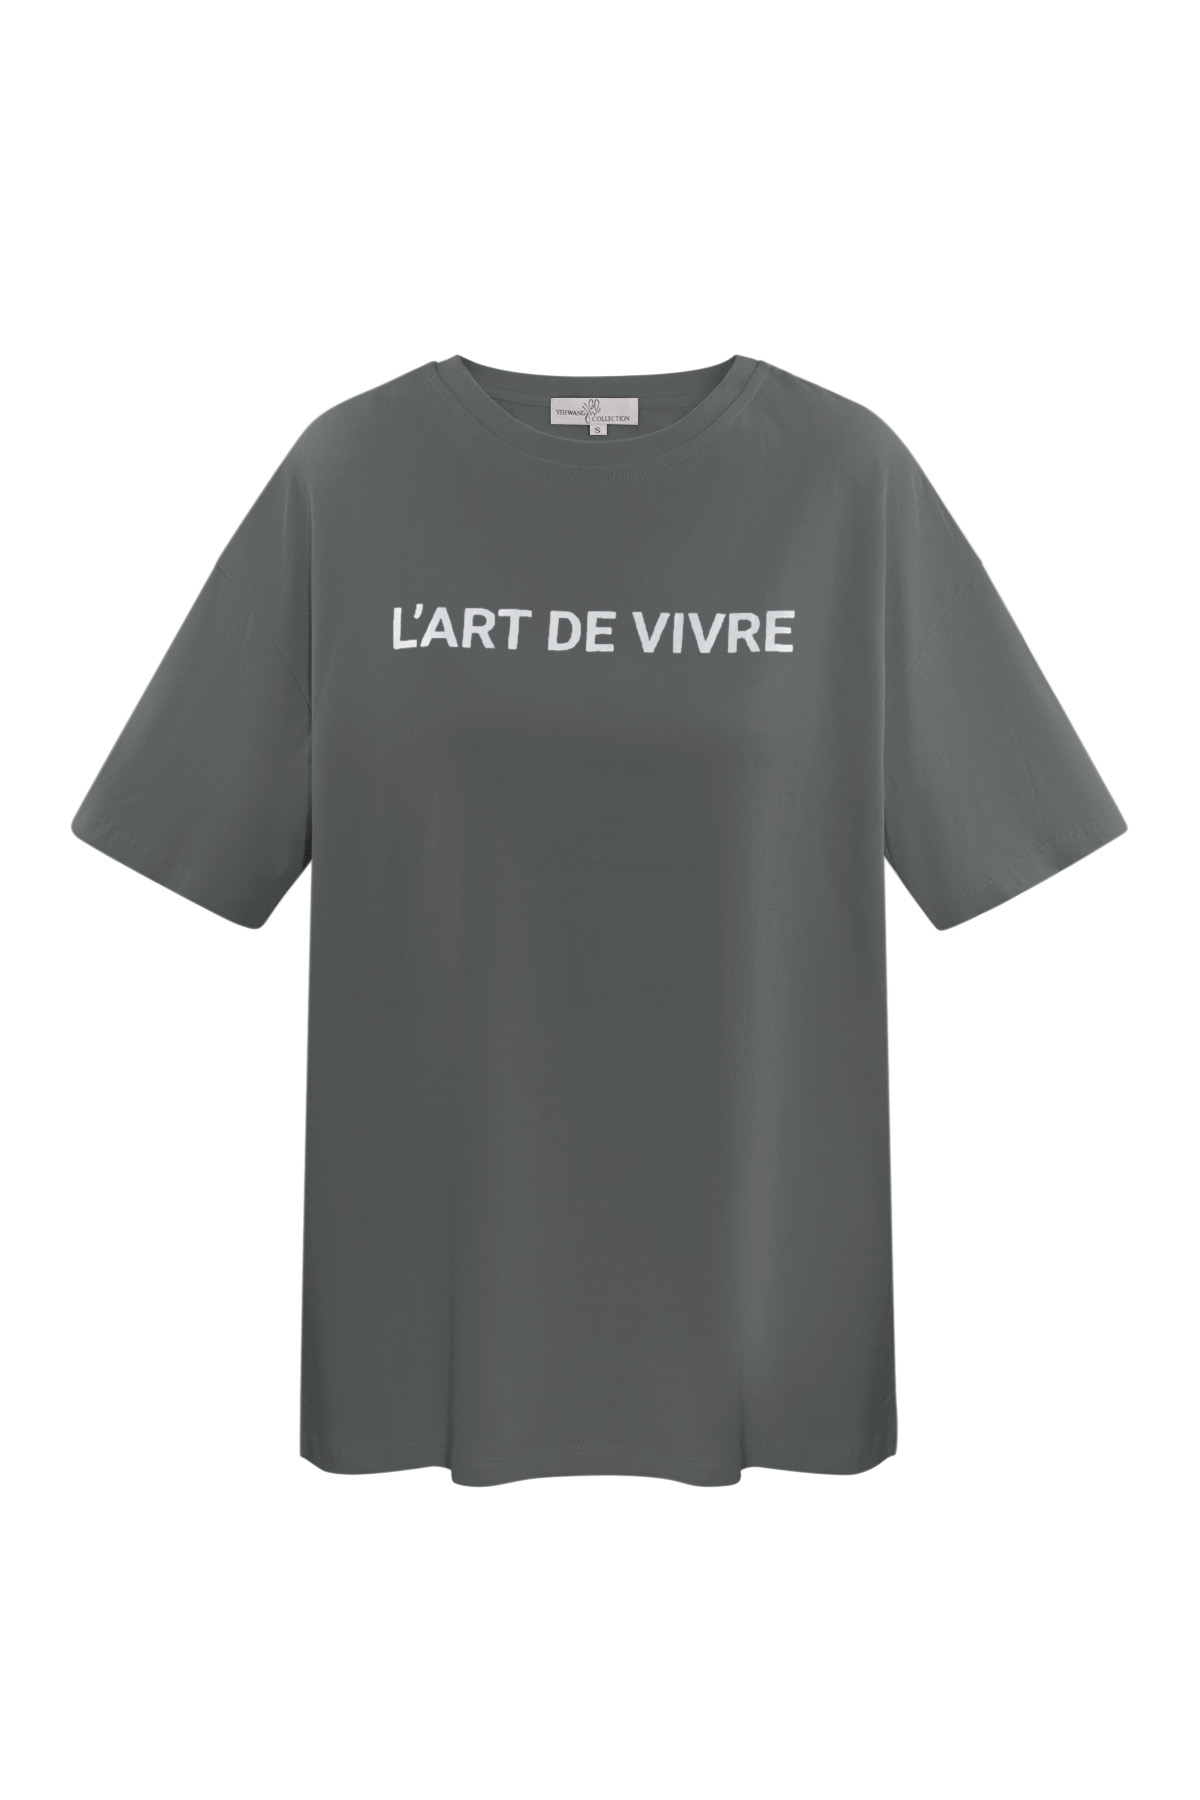 Camiseta l'art de vivre - gris plata